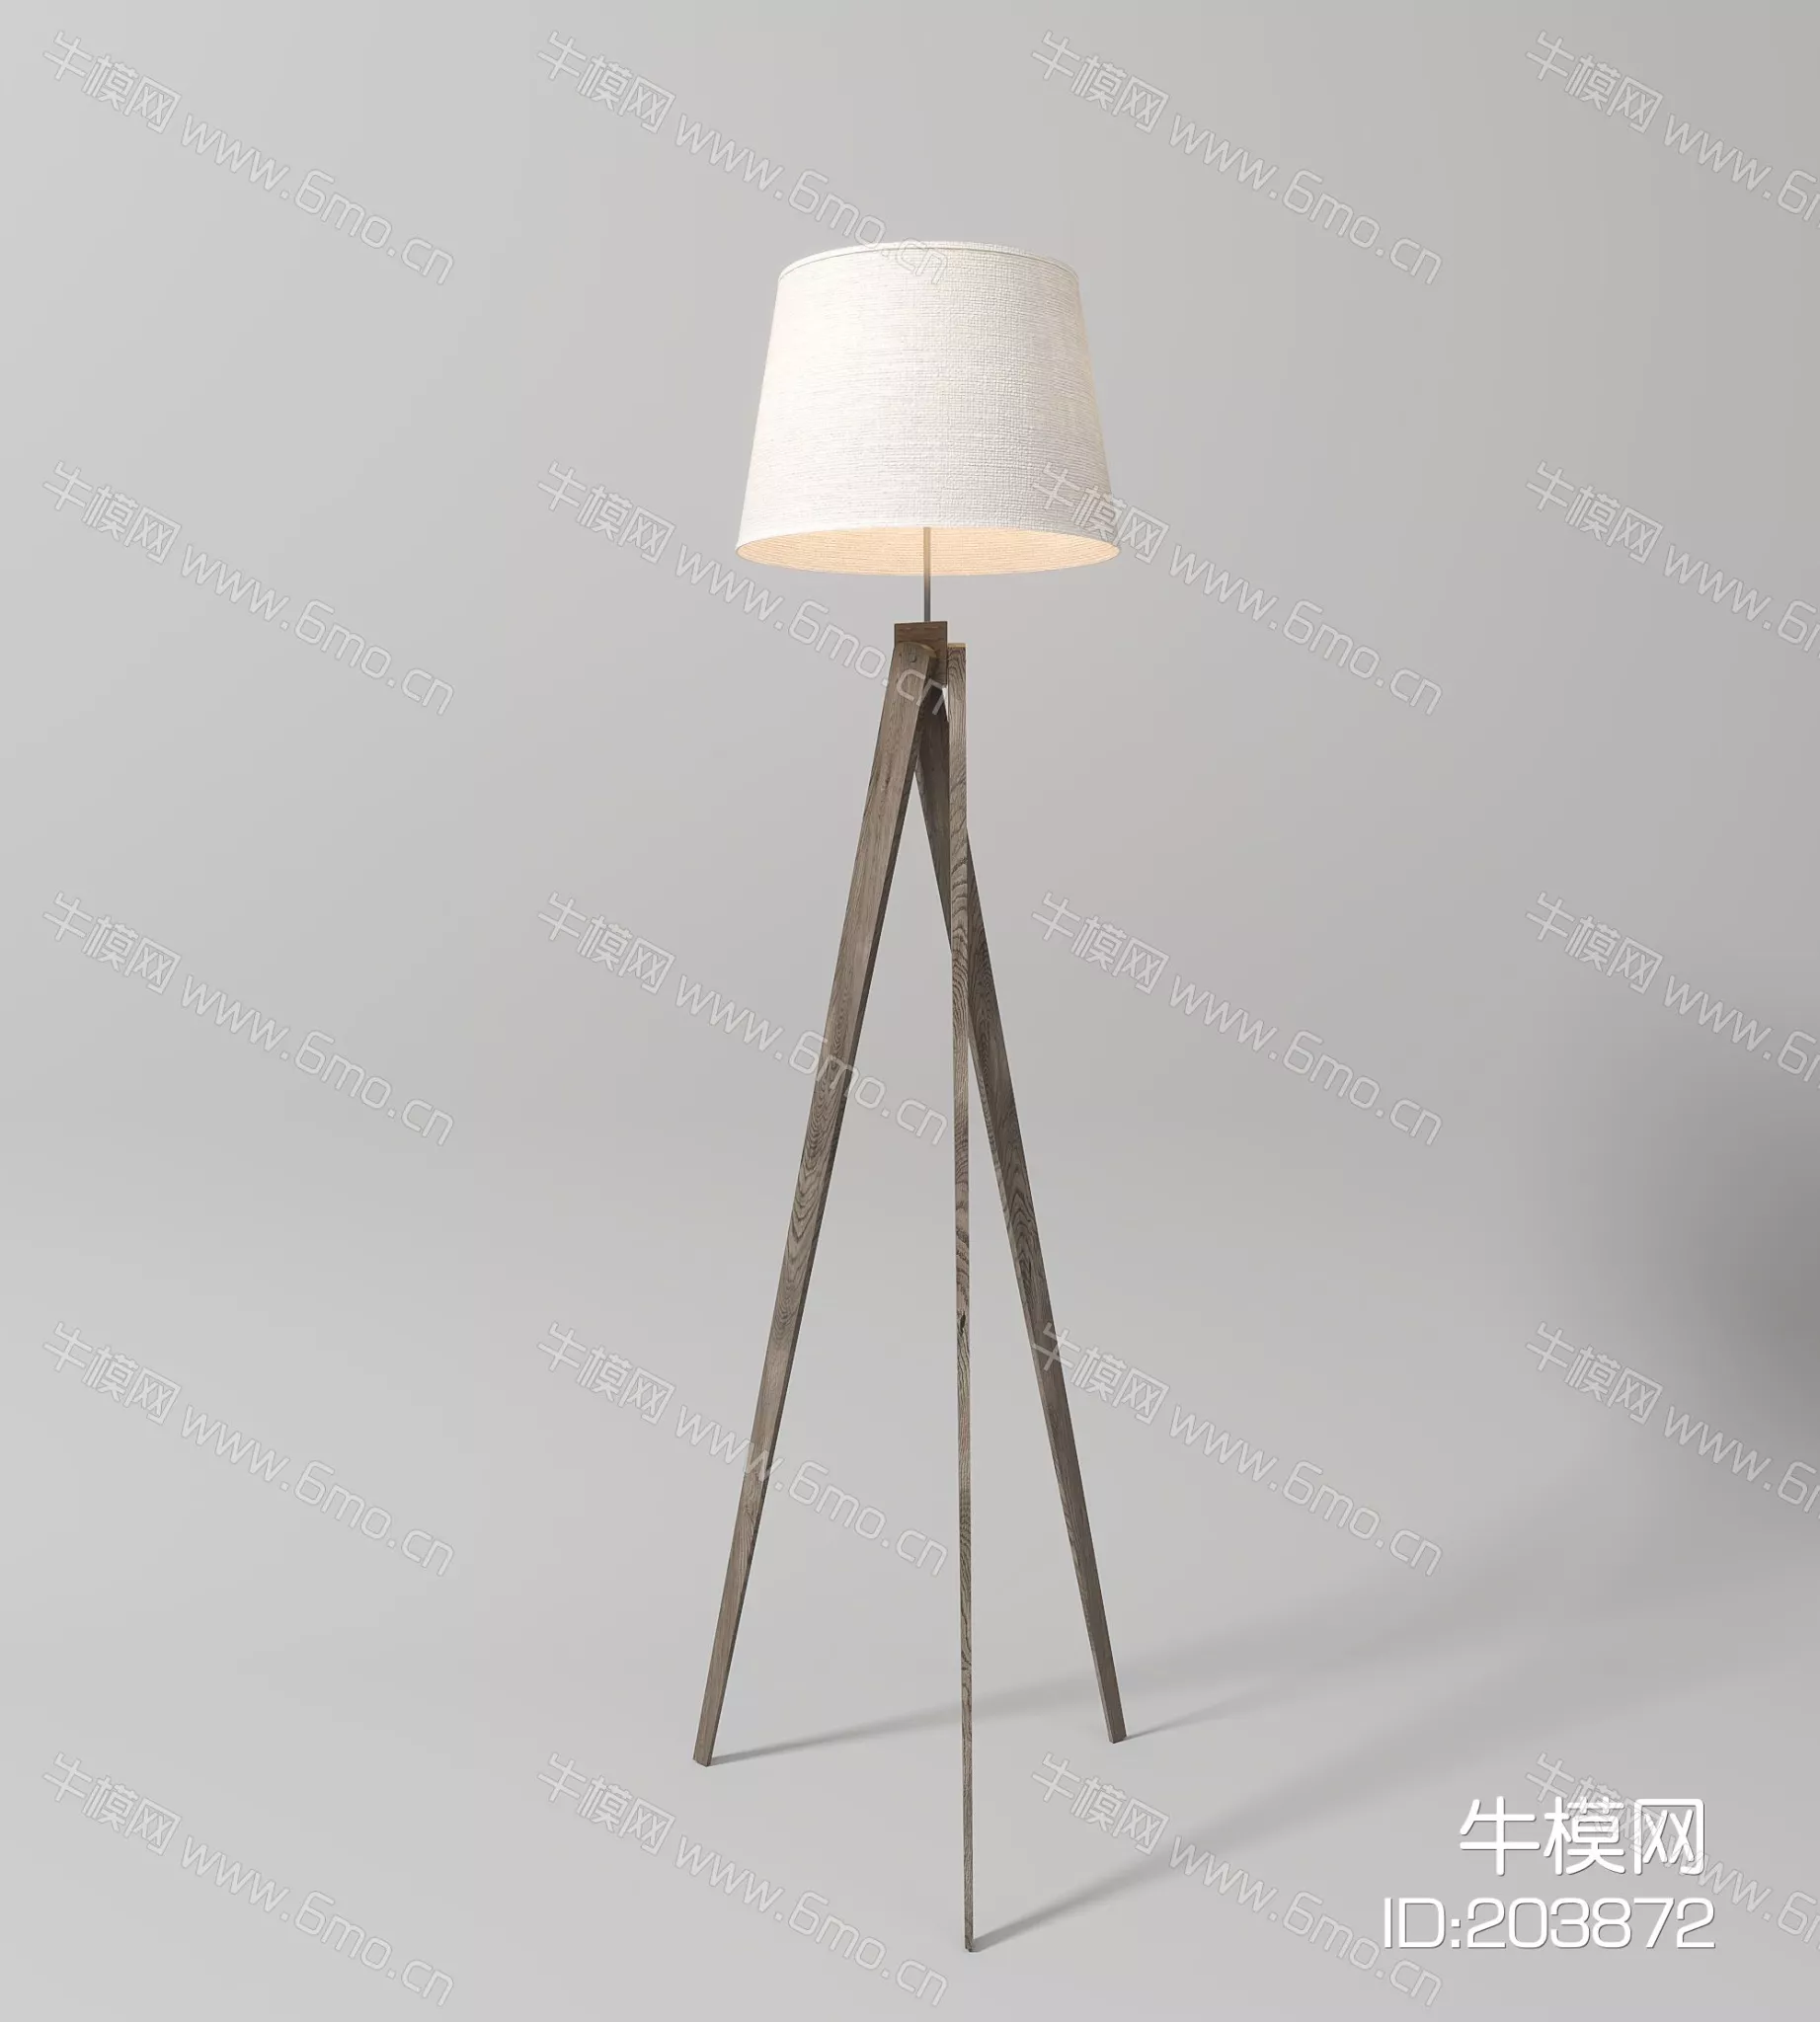 MODERN FLOOR LAMP - SKETCHUP 3D MODEL - ENSCAPE - 203872